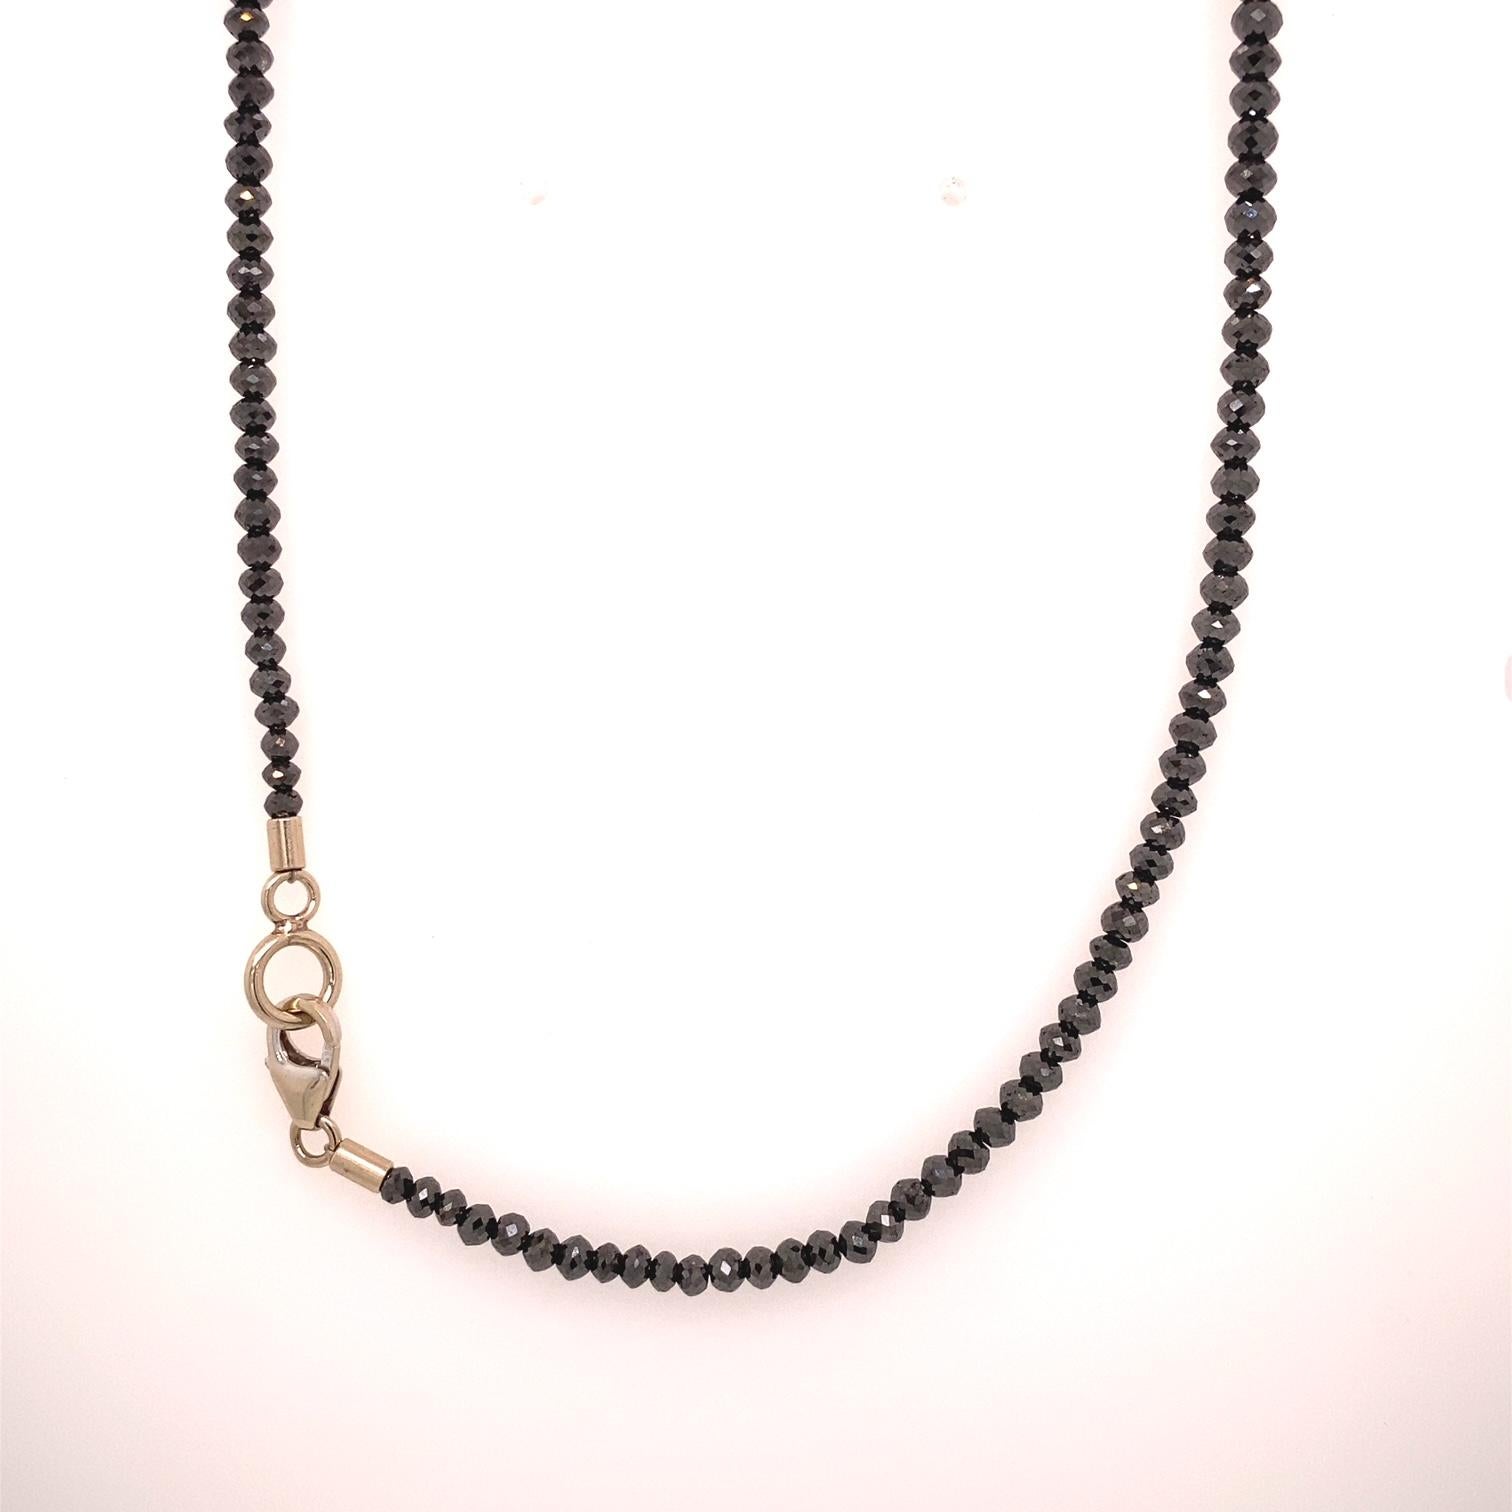 Collier de diamants noirs à facettes de 30,94 carats avec un fermoir en or blanc 14k. Ce collier a été réalisé et conçu par llyn strong.